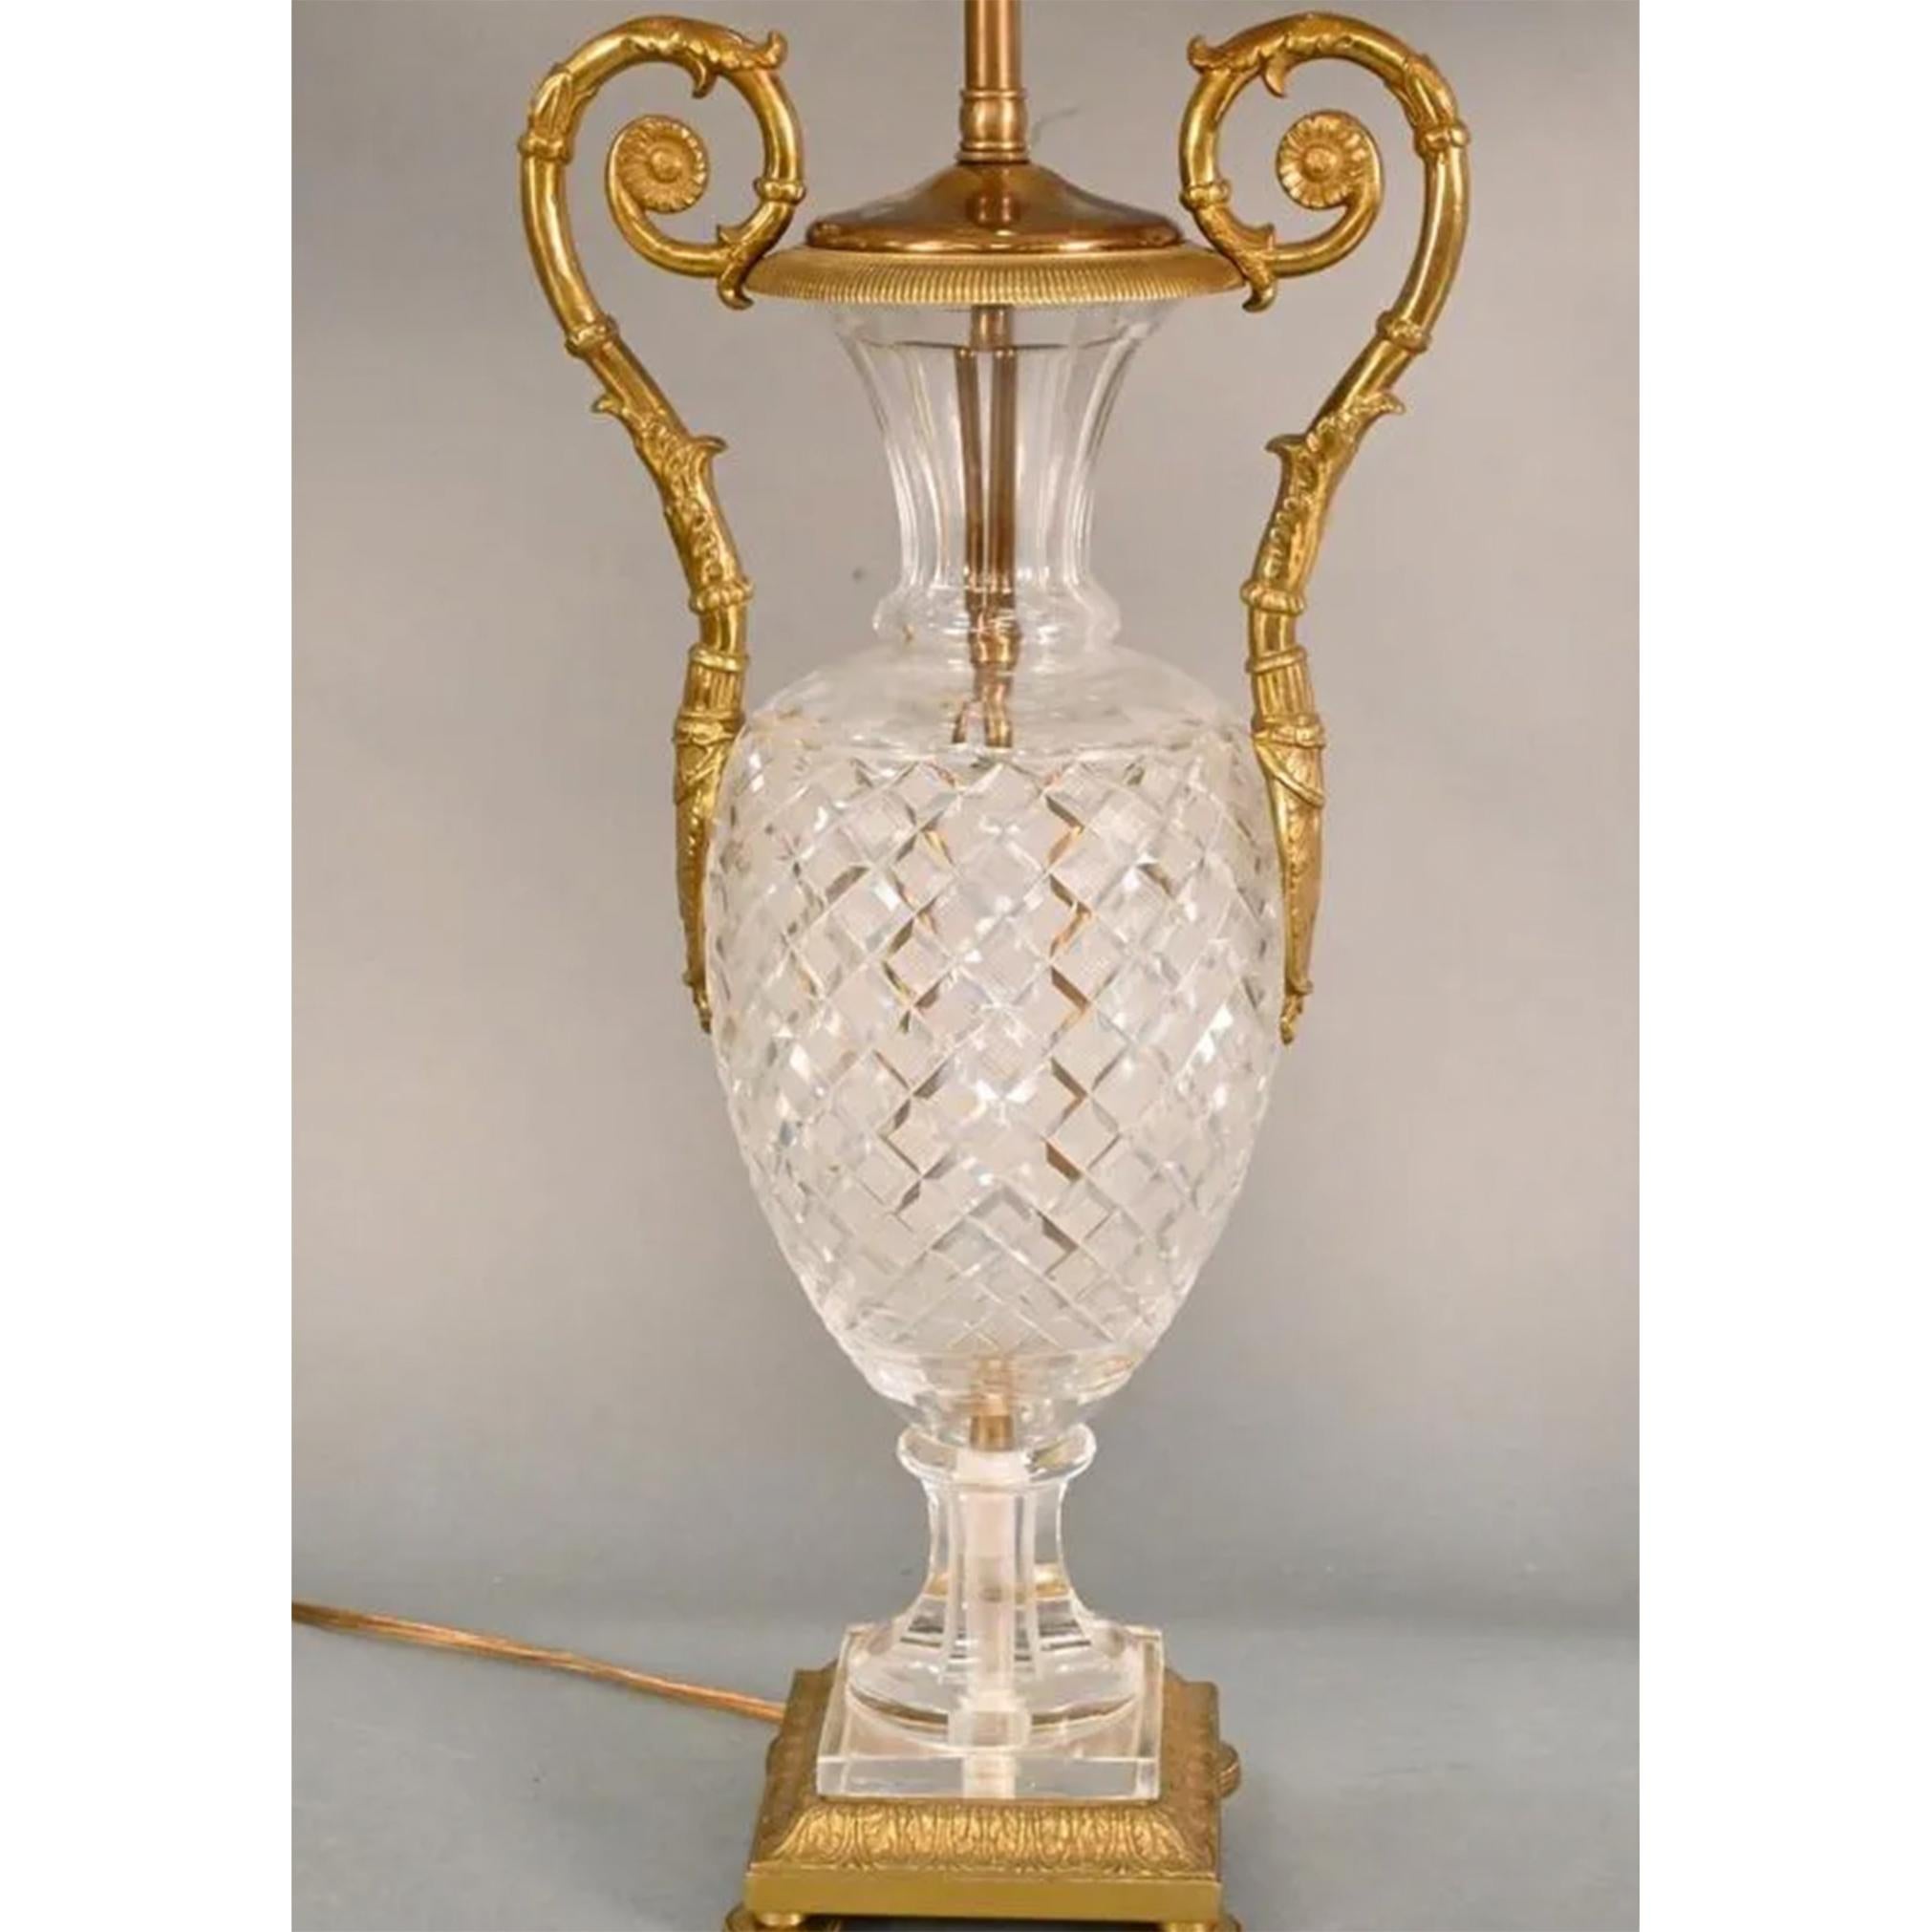 Ein Paar Lampen aus geschliffenem Baccarat-Kristall

Vasen im Empire-Stil mit Gittermuster und Griffen in Form einer Bronzeschnecke, die auf einem quadratischen Bronzesockel ruhen. 

Höhe: 29 Zoll.